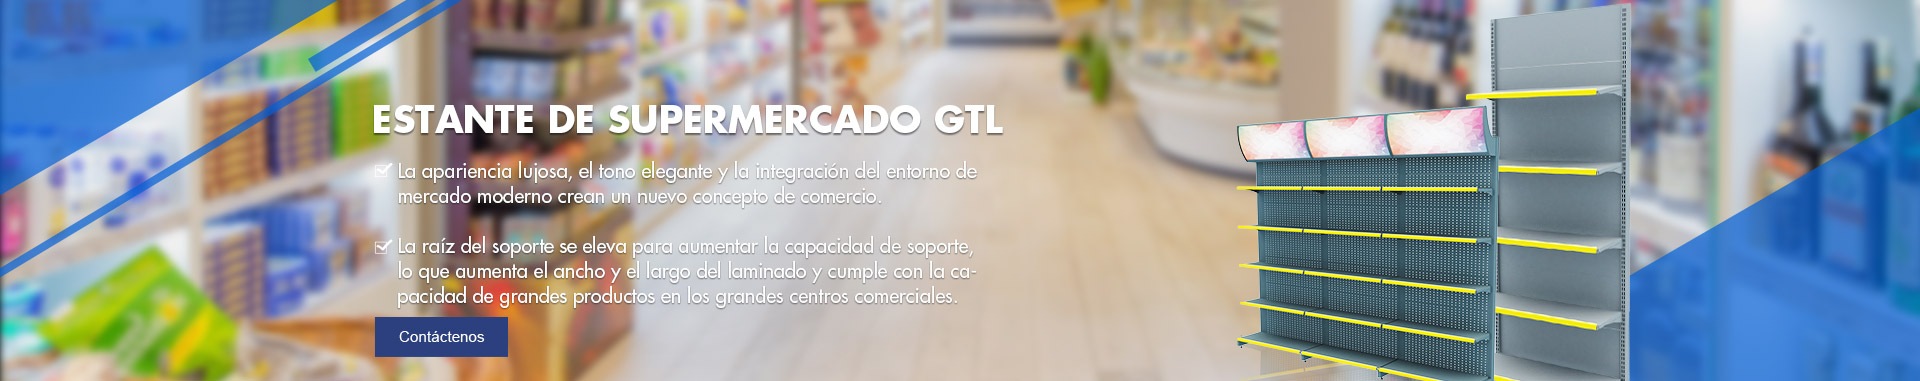 Equipos de supermercado GTL